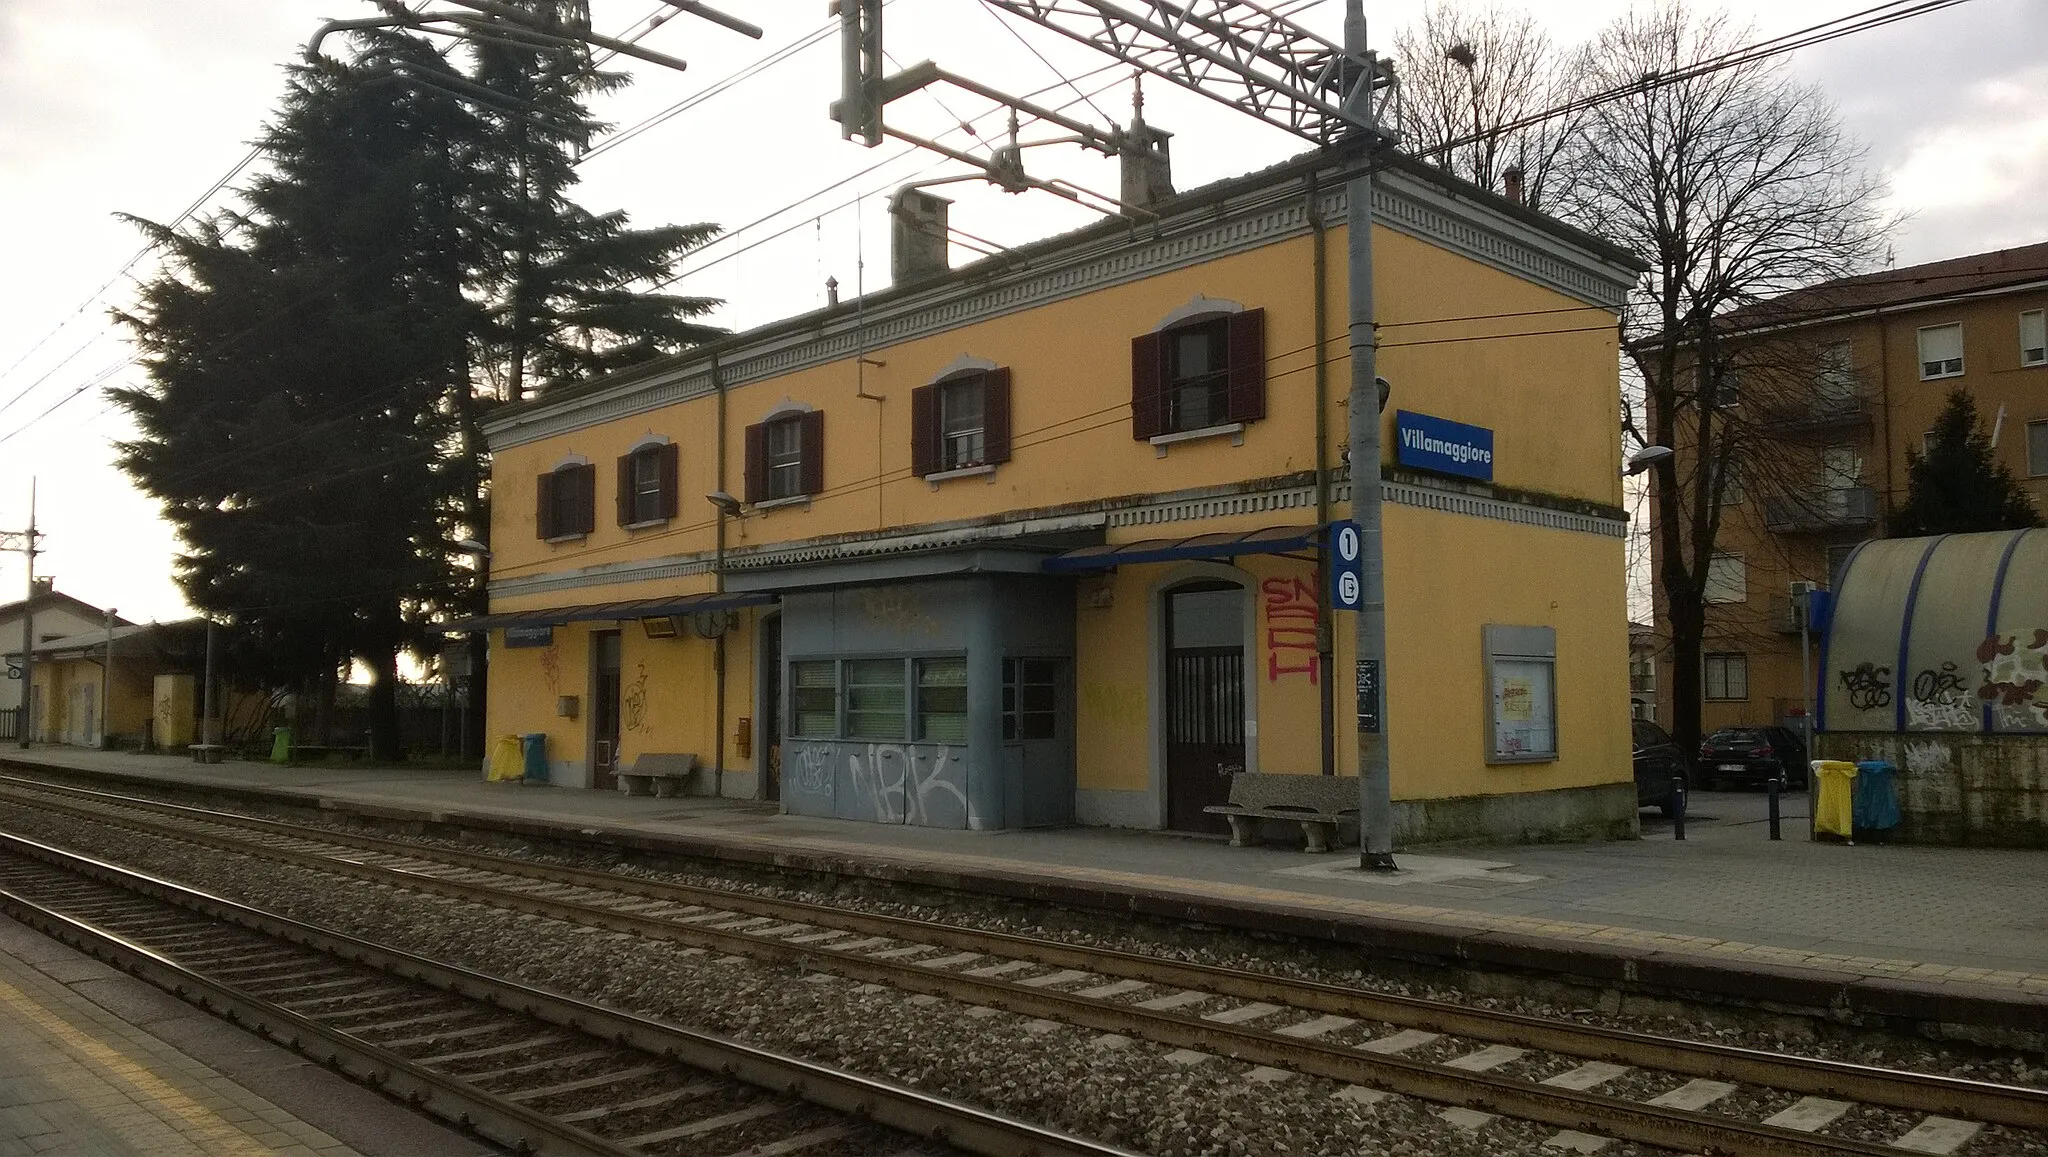 Photo showing: La stazione di Villamaggiore nel comune di Lacchiarella (MI), Italia.